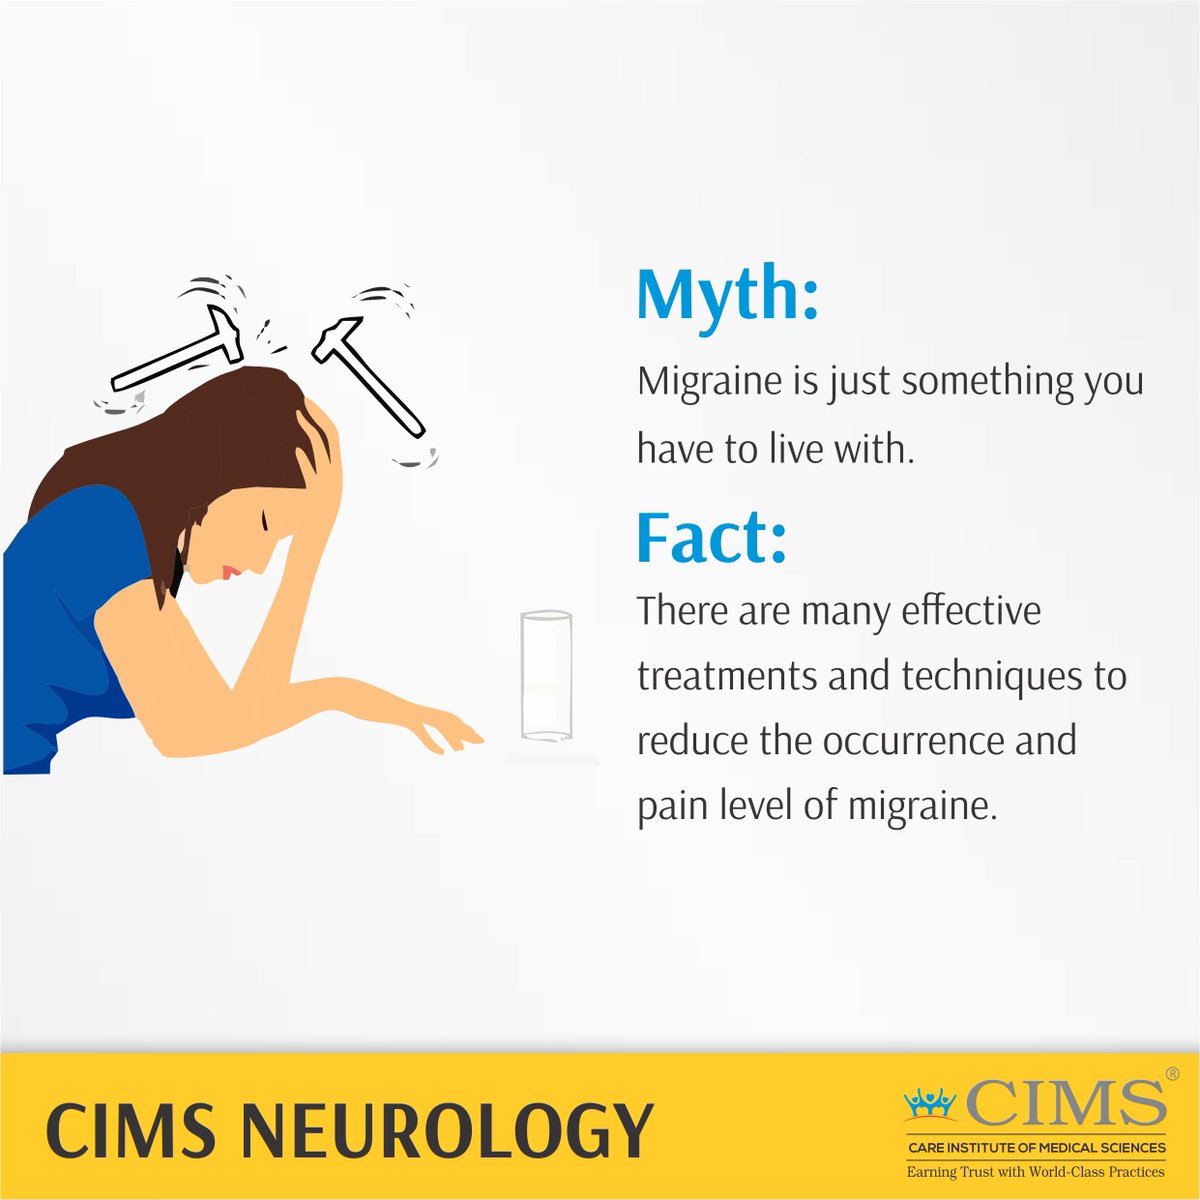 Here is a common myth vs. fact about migraine.
cims.org
#cimshospital #cimsneurology #migraine #headache #neurology #neurologicalhealth